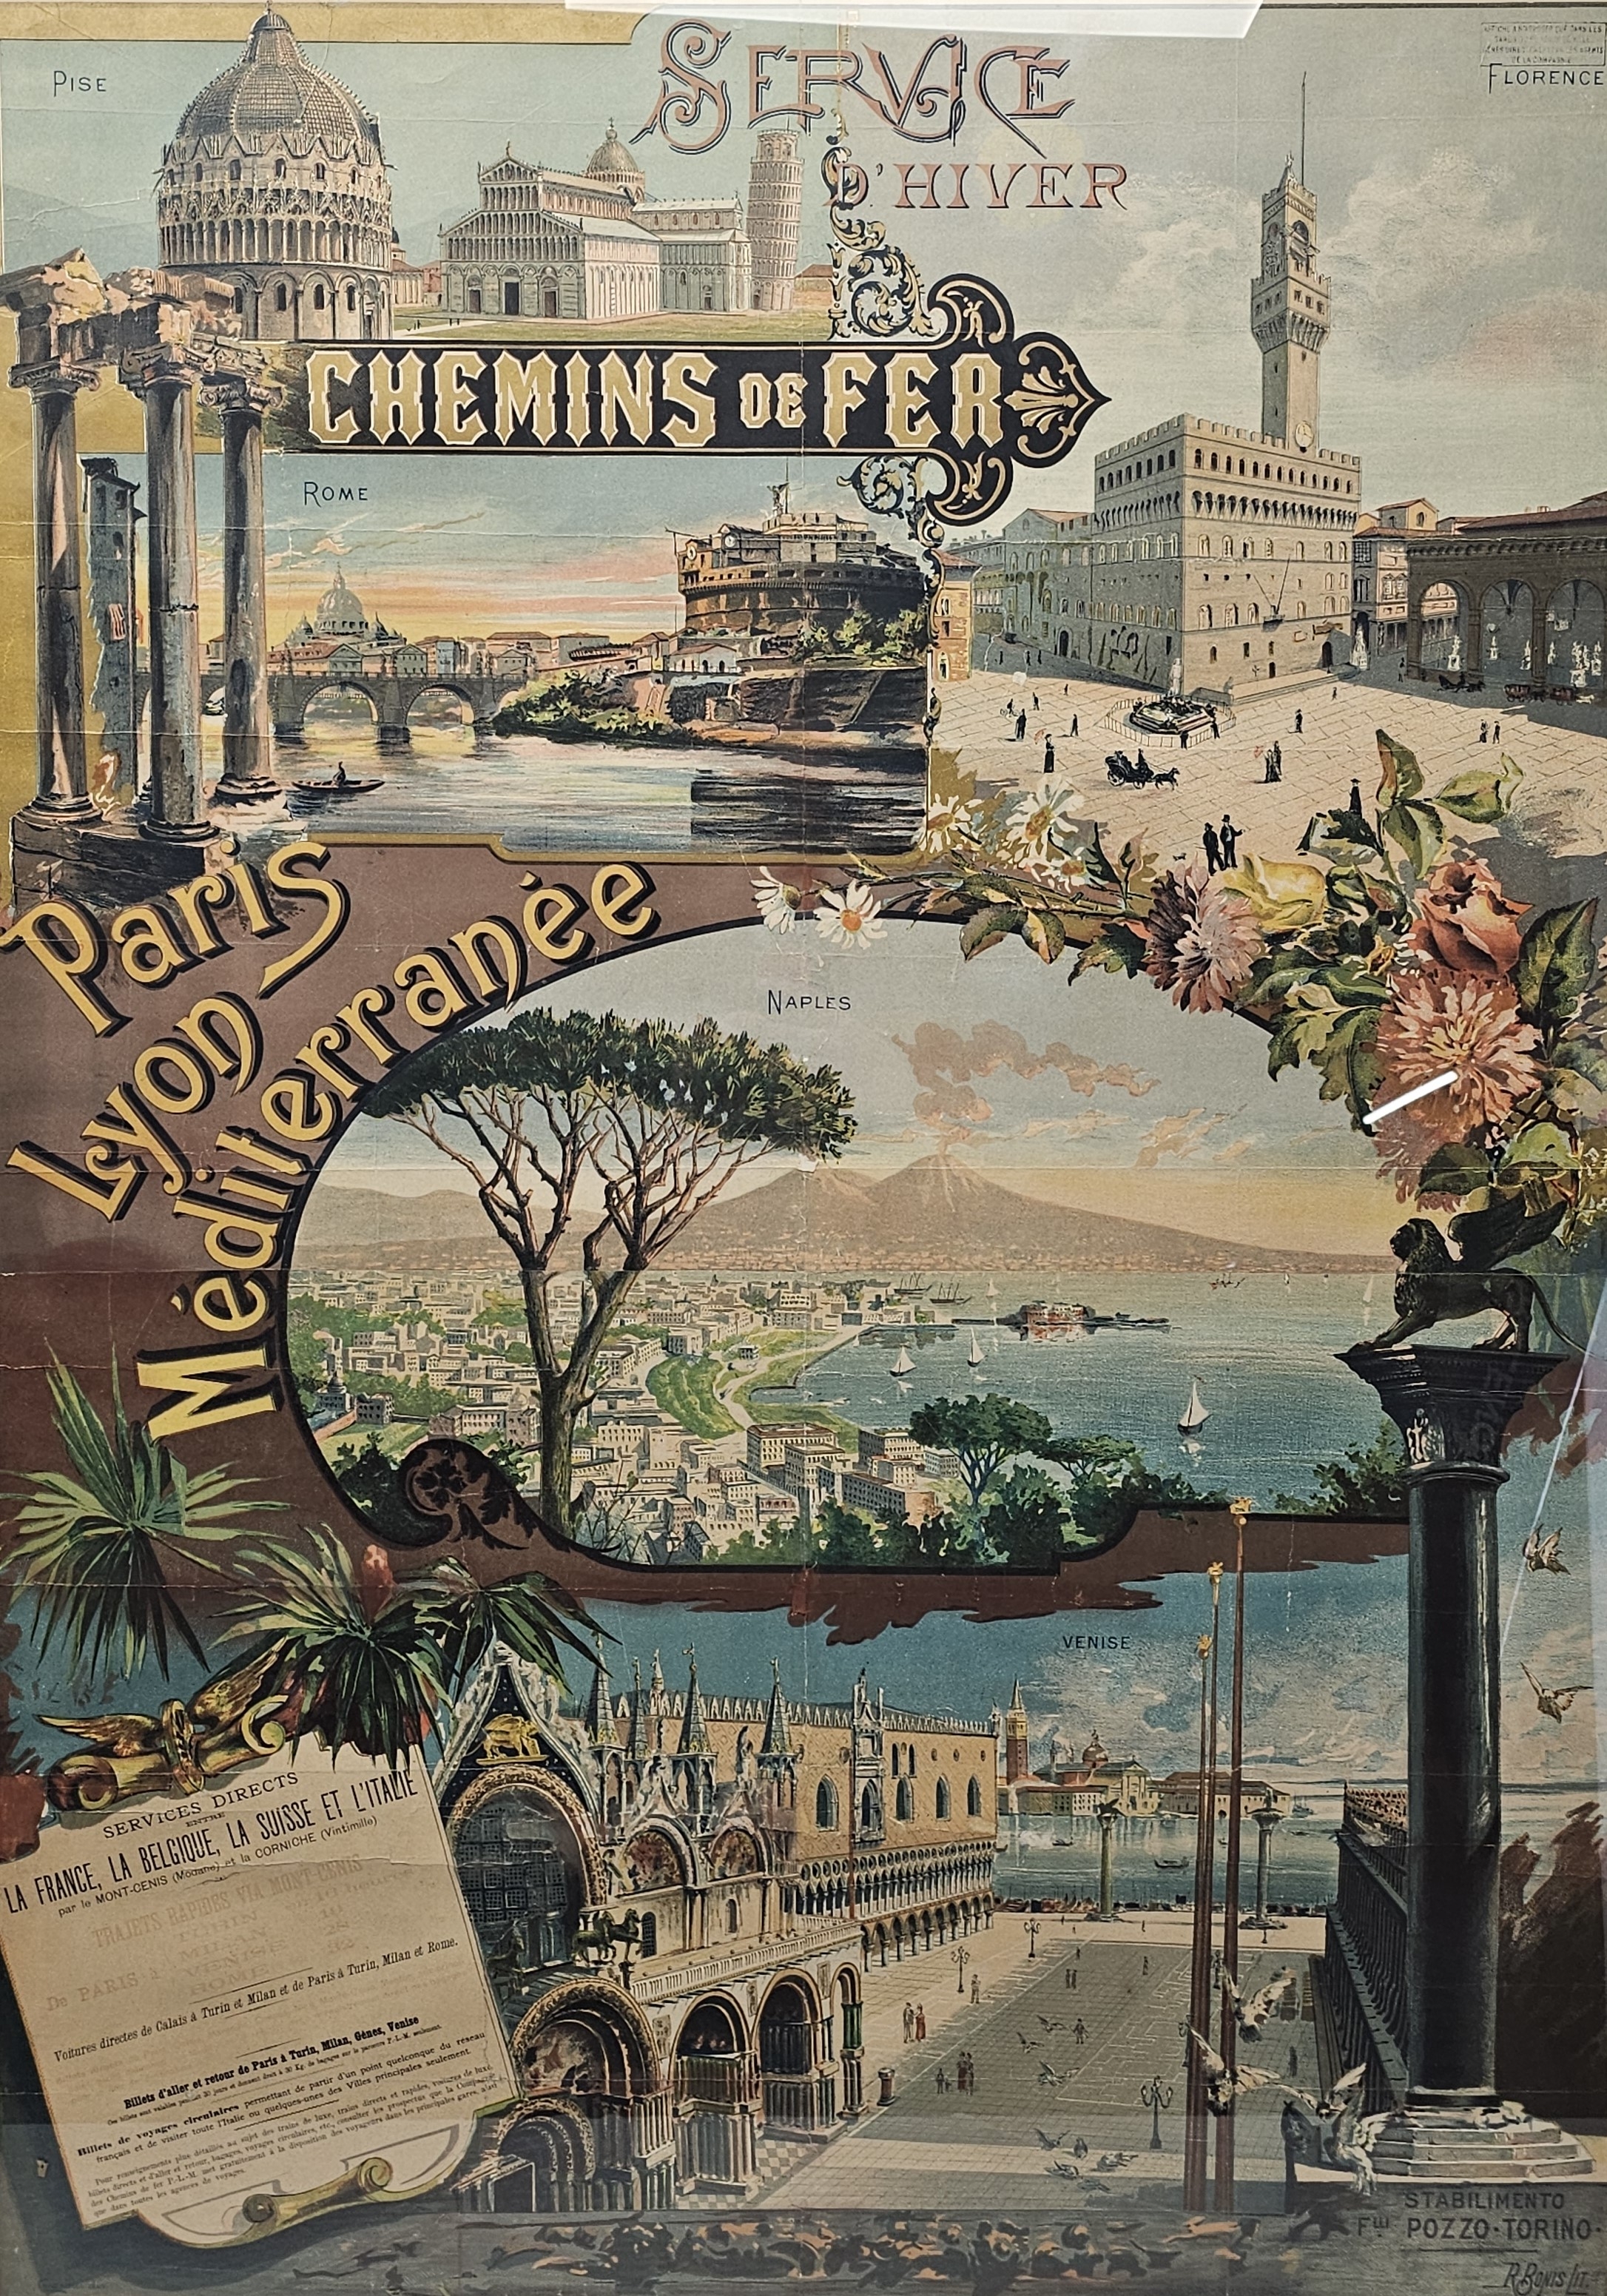 R. Bonis. French rail travel poster. Lithograph. Chemins de fer Paris-Lyon-Méditerranée. Advertising